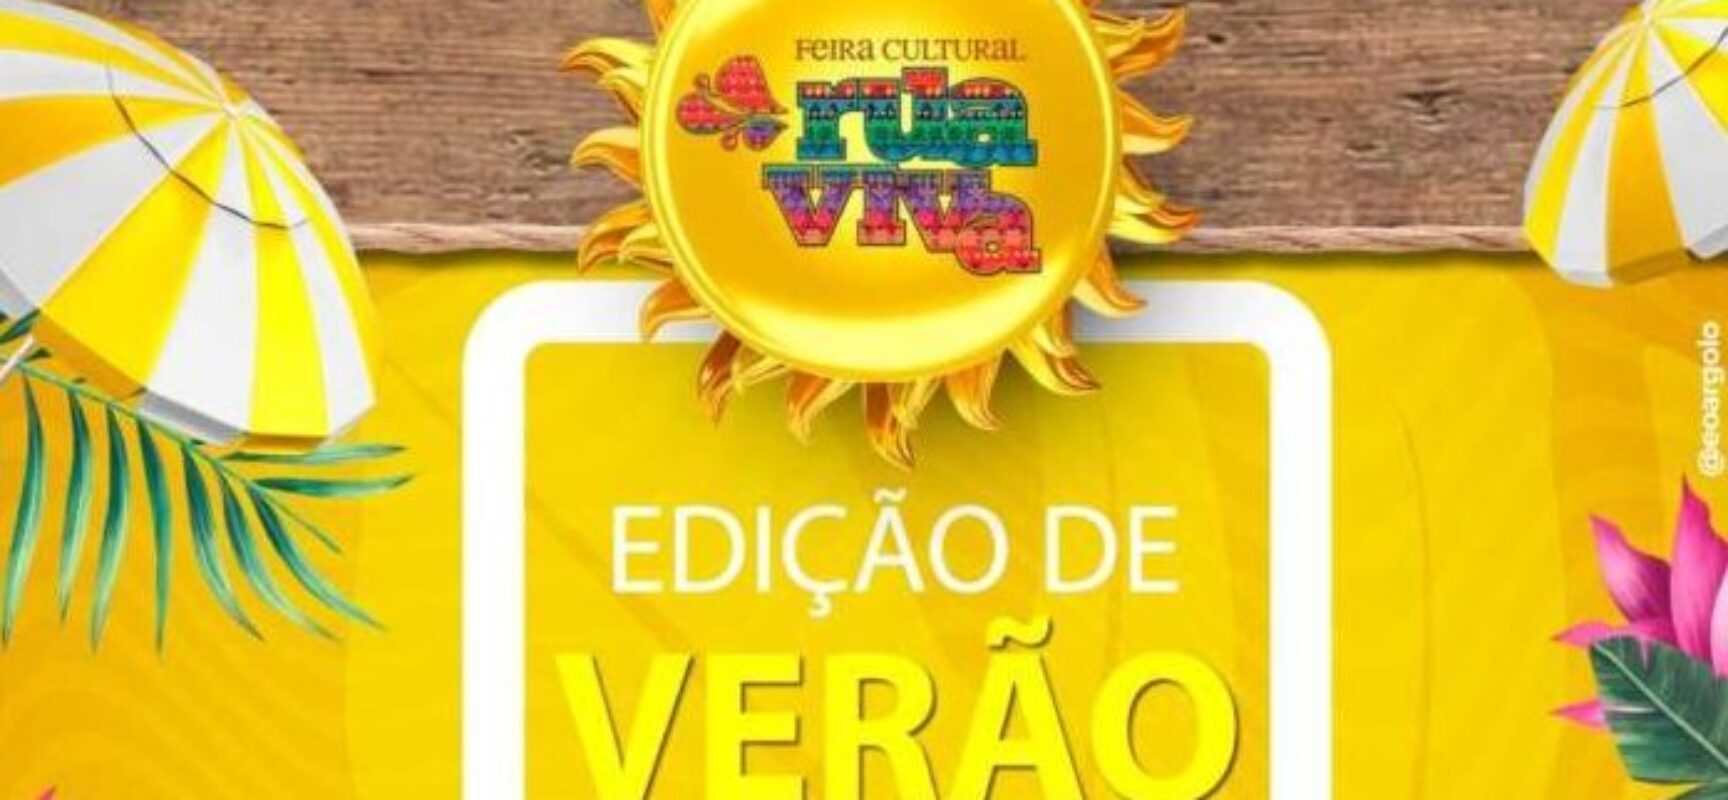 Feira Cultural Rua Viva promove edição de Verão neste sábado (14)